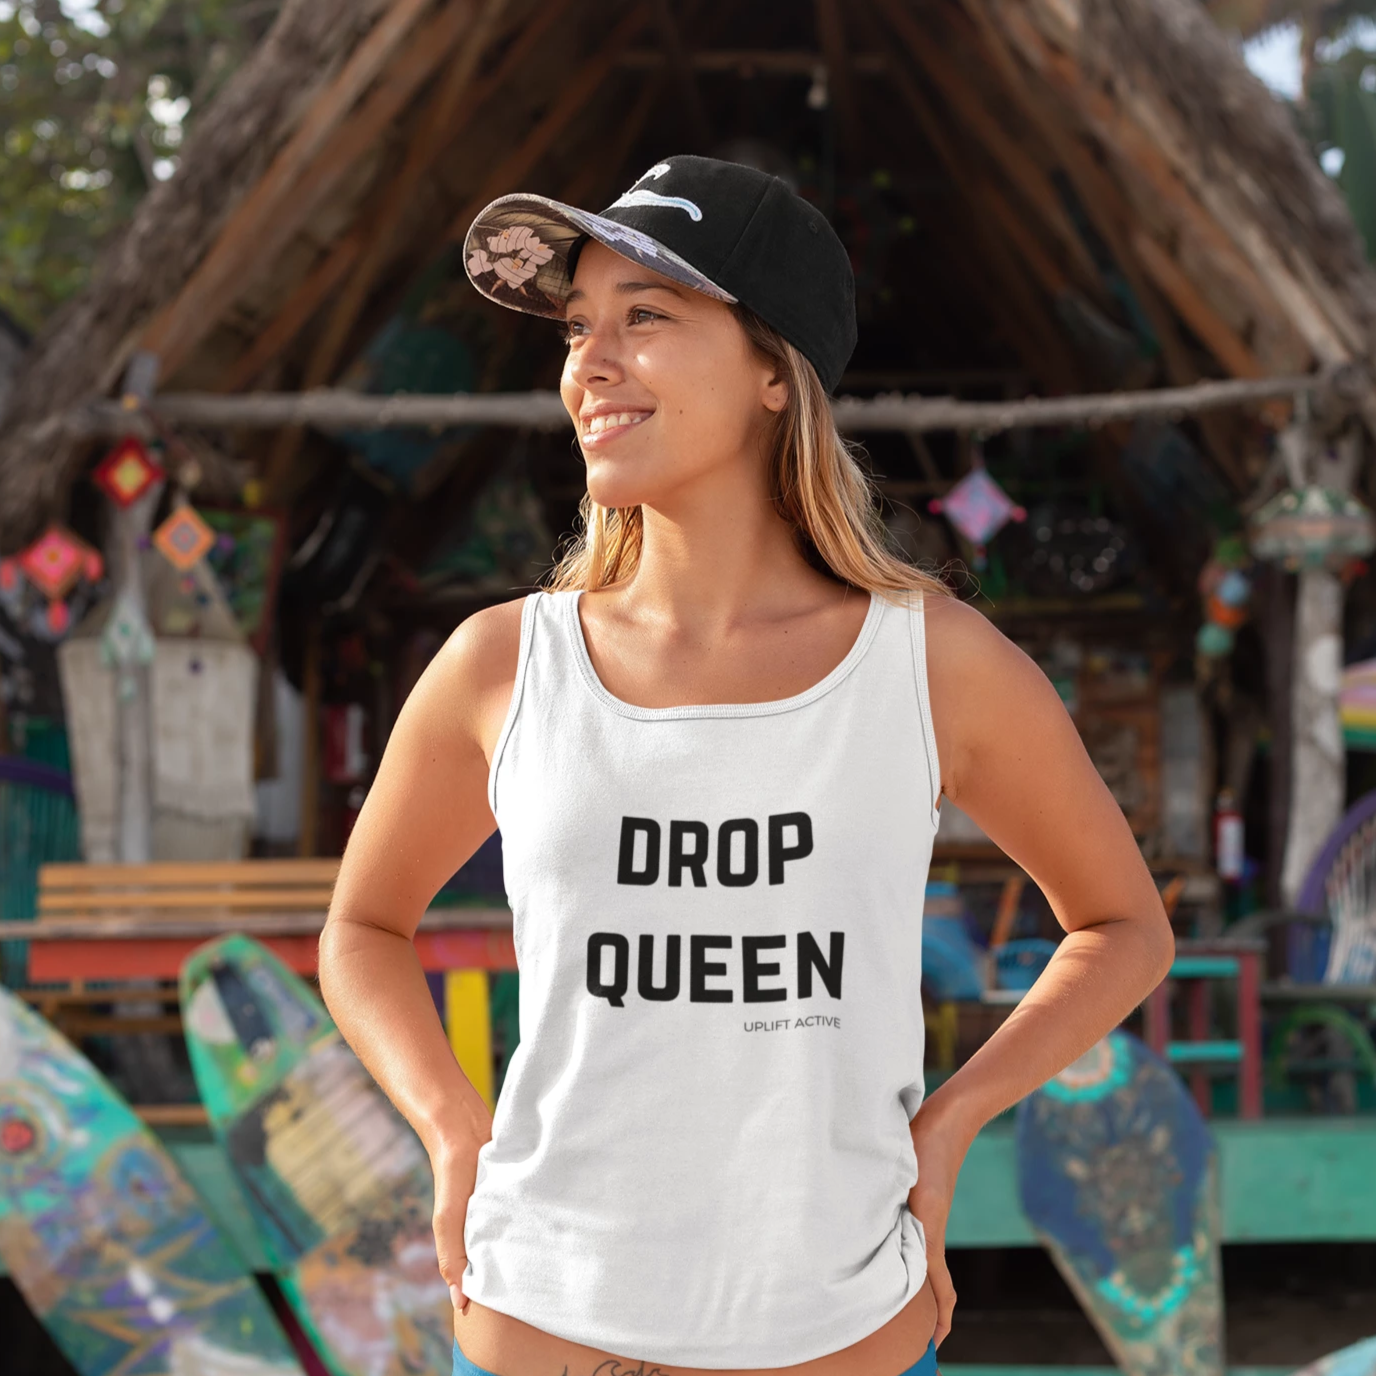 Drop Queen Print in Black Aerial Silks Tank Top - Uplift Active